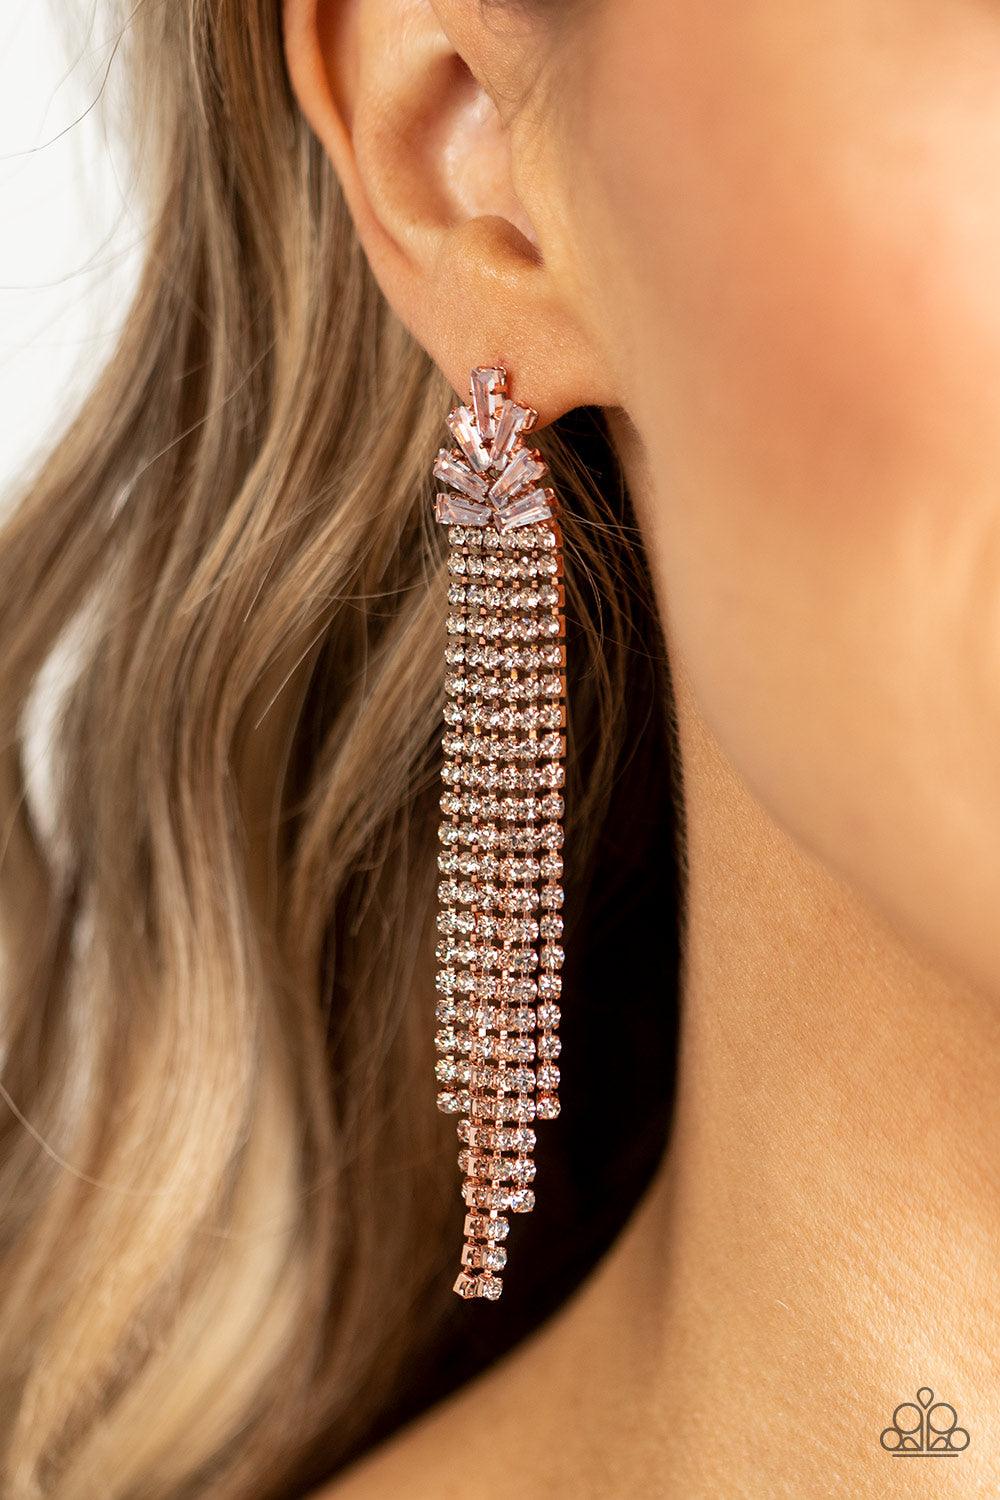 Overnight Sensation Copper Earrings - Jewelry by Bretta